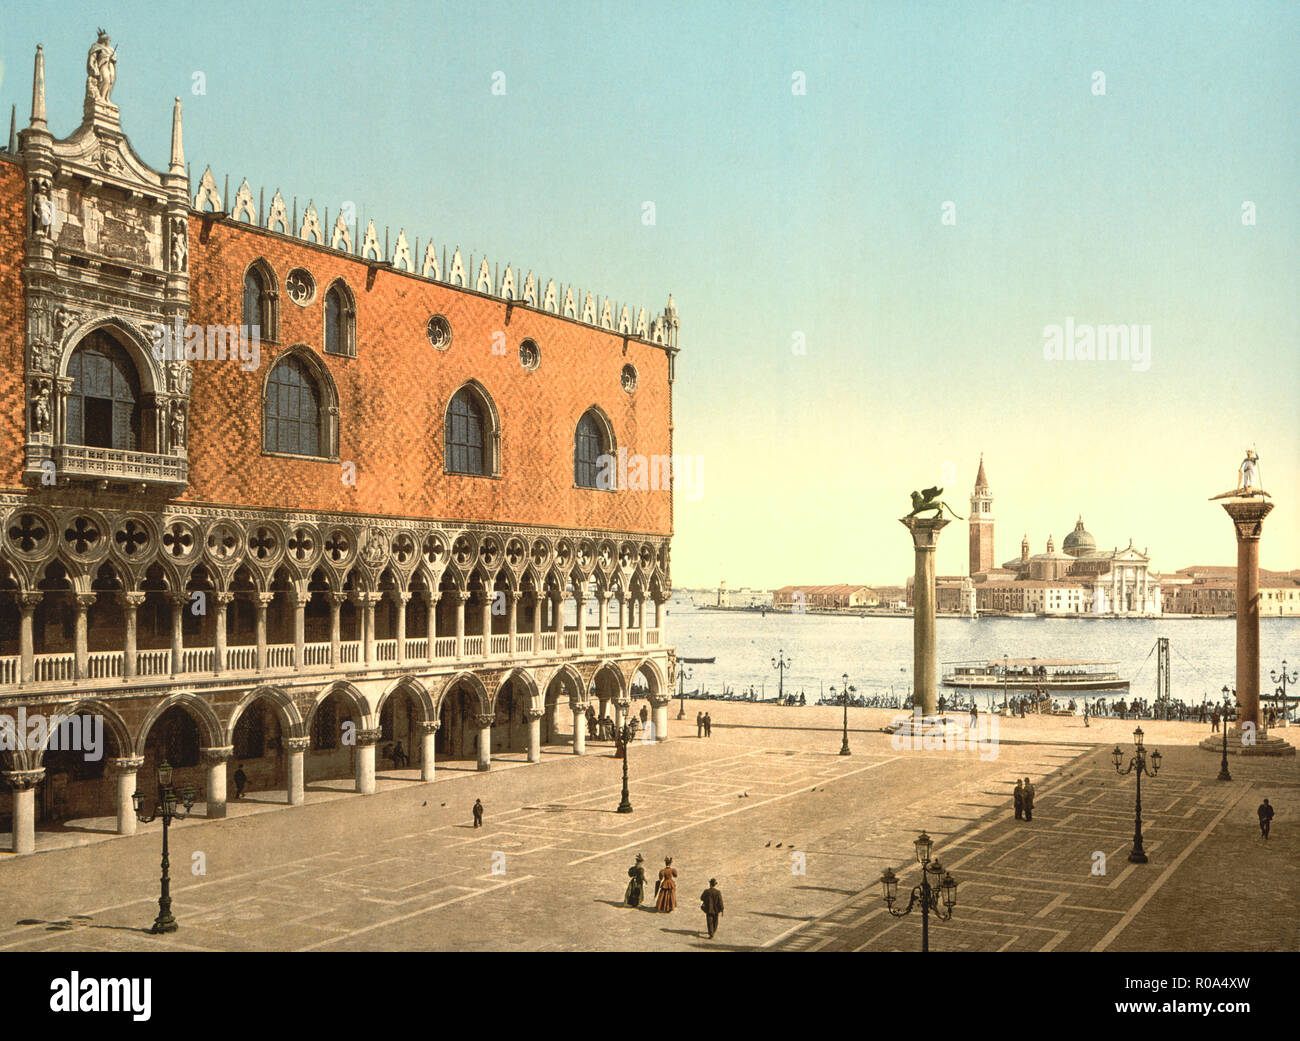 La Piazzetta et le Palais des Doges, Venise, Italie, impression Photochrome, Detroit Publishing Company, 1900 Banque D'Images